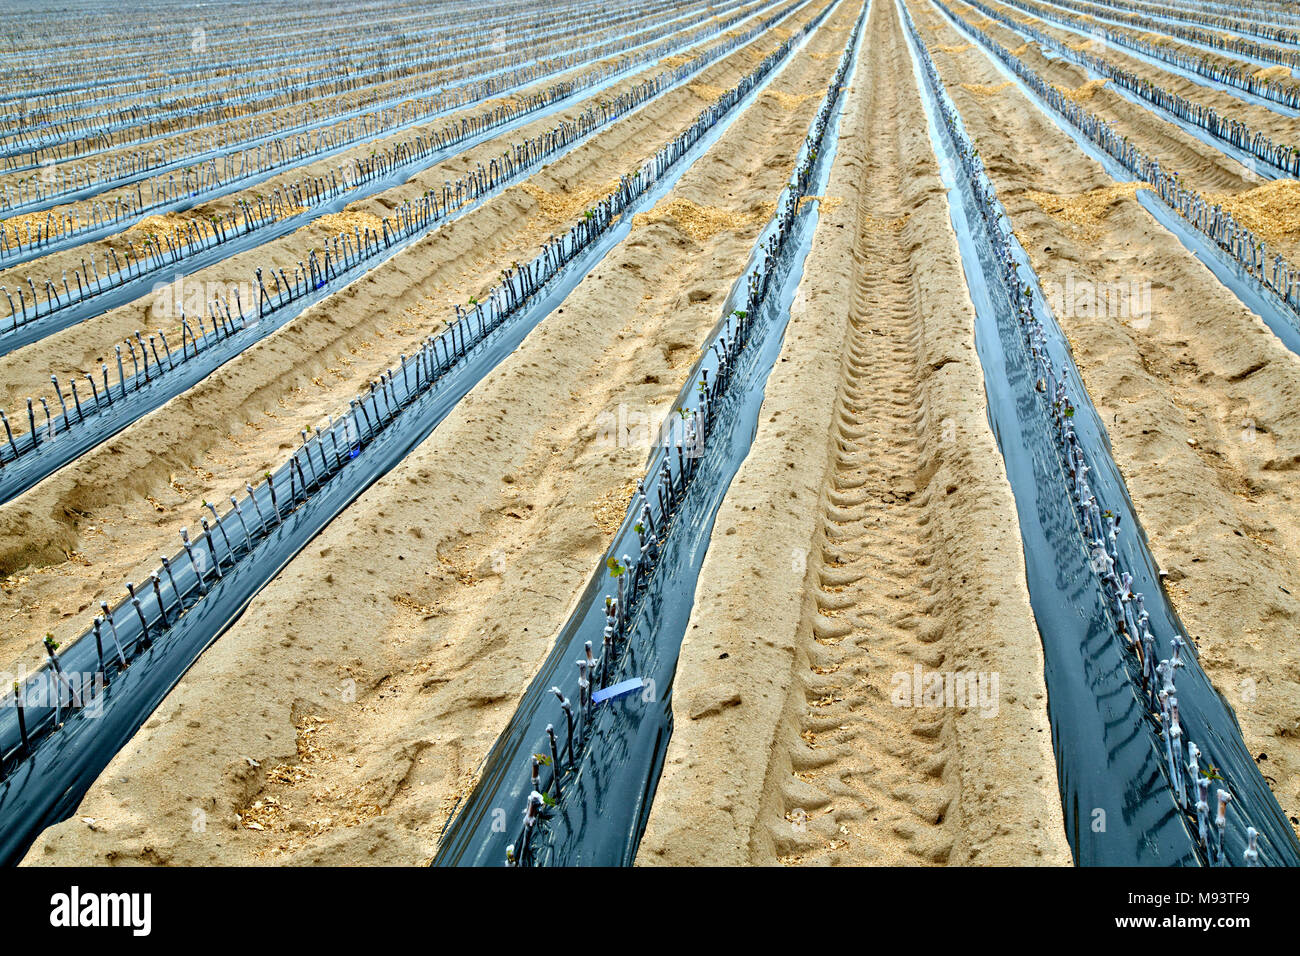 Zeilen von Pfropfreben & gewachst Keltertrauben, Stecklinge im Feld Zeilen gepflanzt. Stockfoto